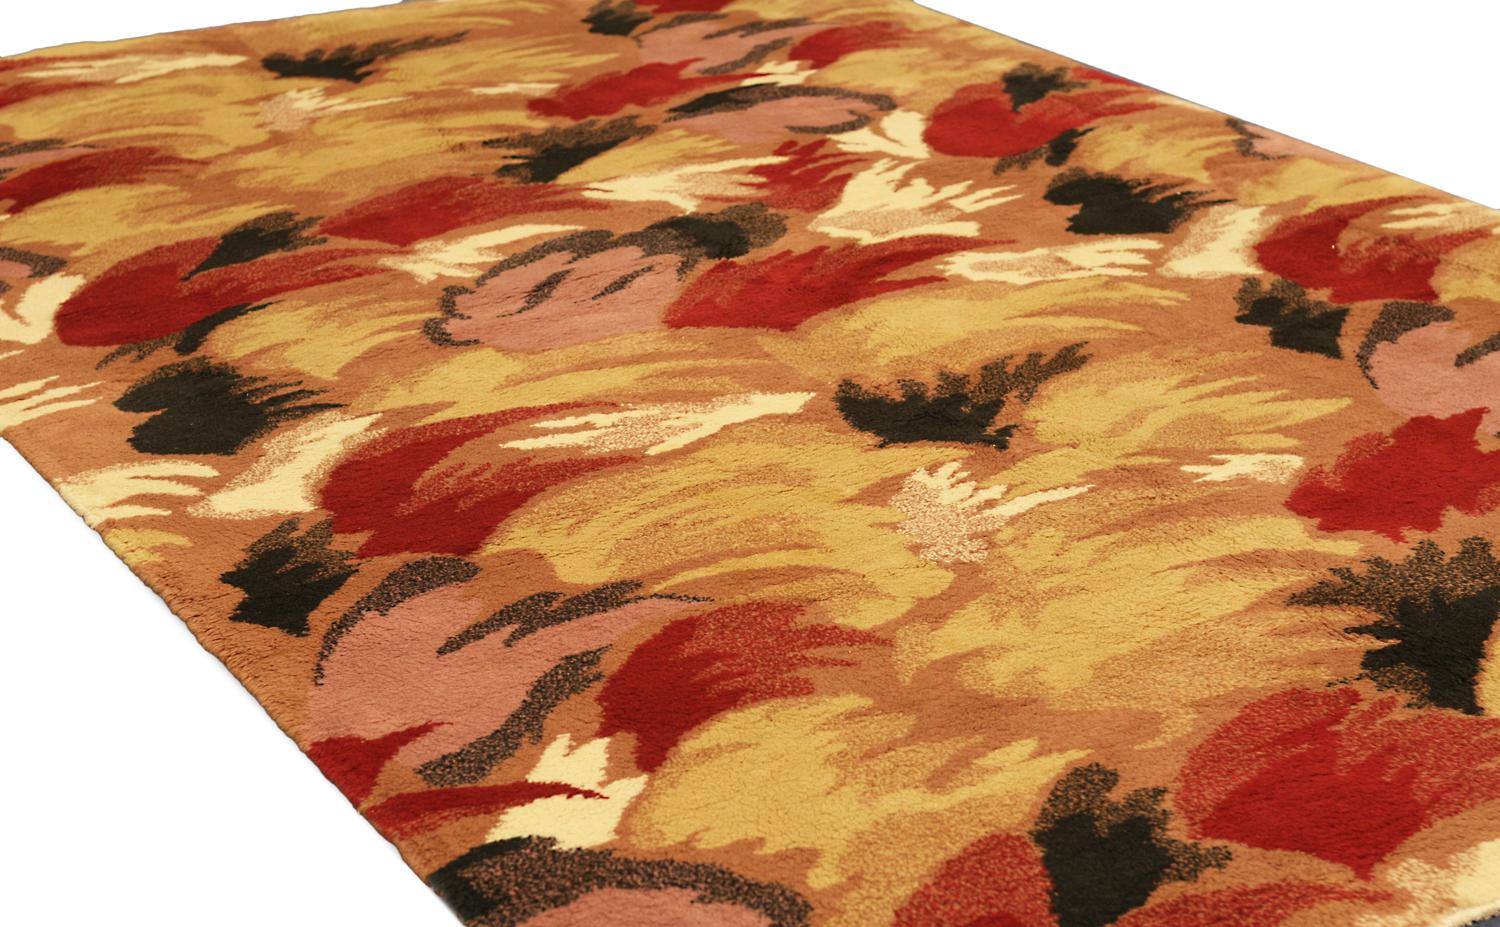 Dies ist ein handgewebter, halb-antiker türkischer Teppich, gewebt um 1950-1970. Es hat ein stilisiertes Motivdesign, das von der Art-Déco-Bewegung inspiriert wurde. Dieser hoch stilisierte Vintage-Teppich ist bereit, viele Jahre lang genutzt zu